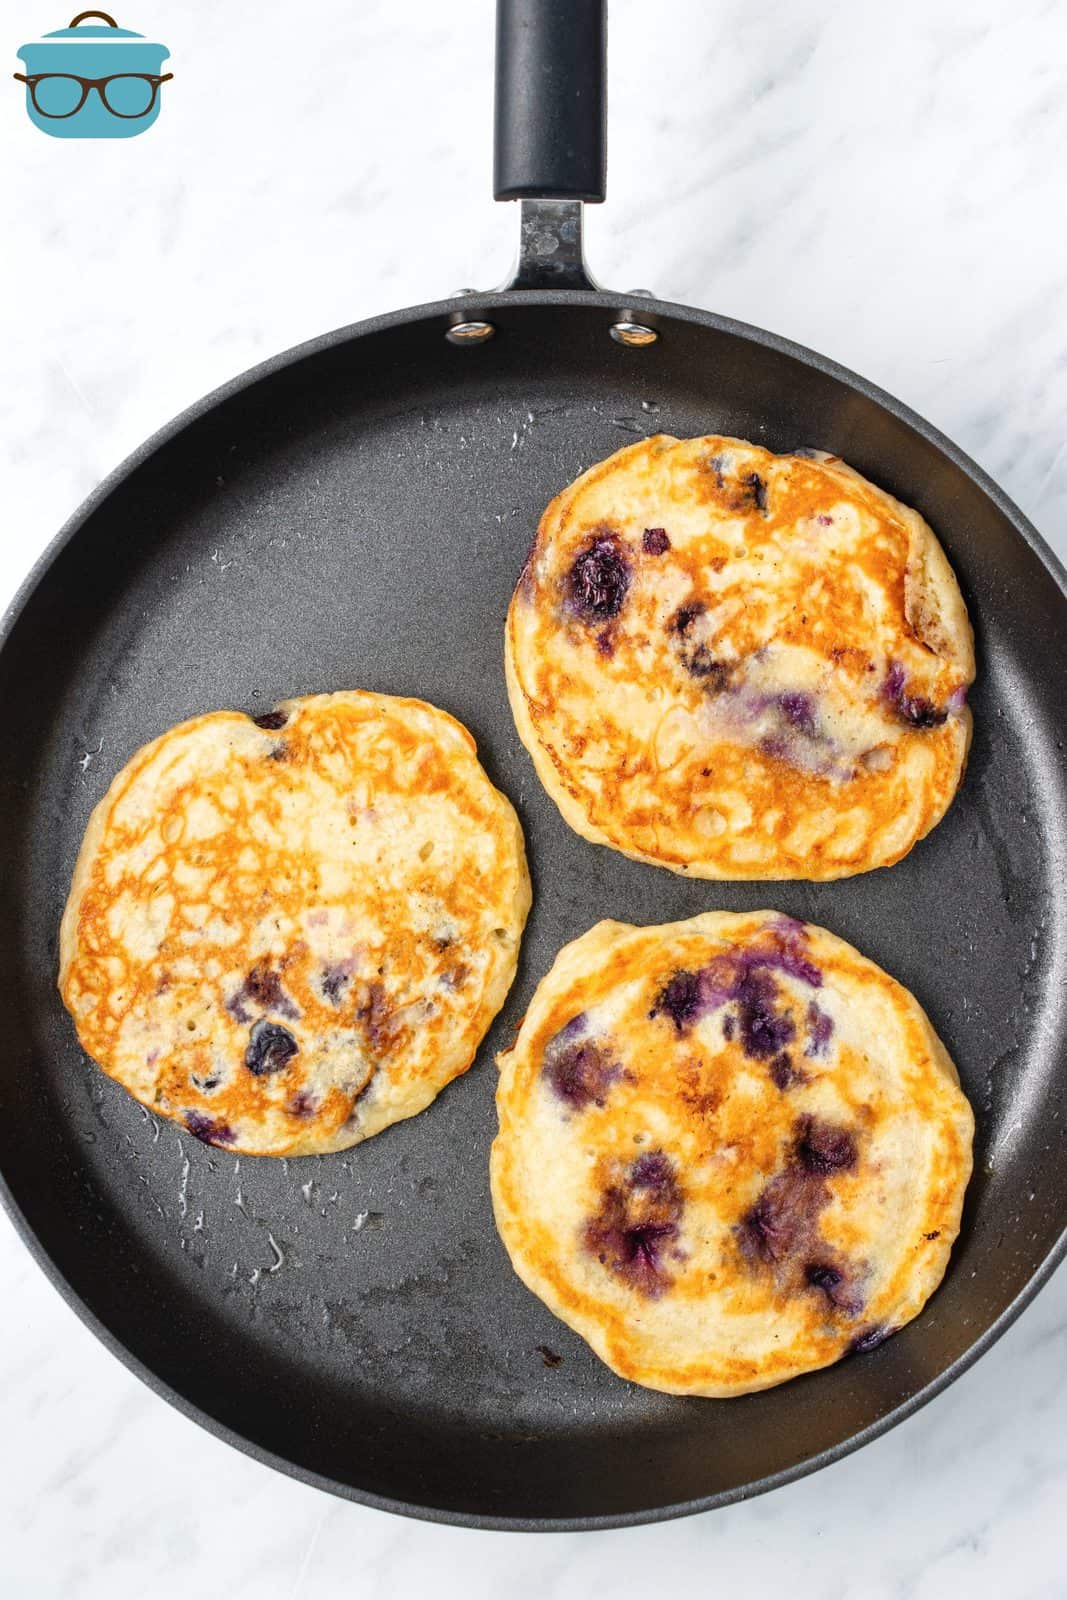 Blueberry Pancakes frying in pan.